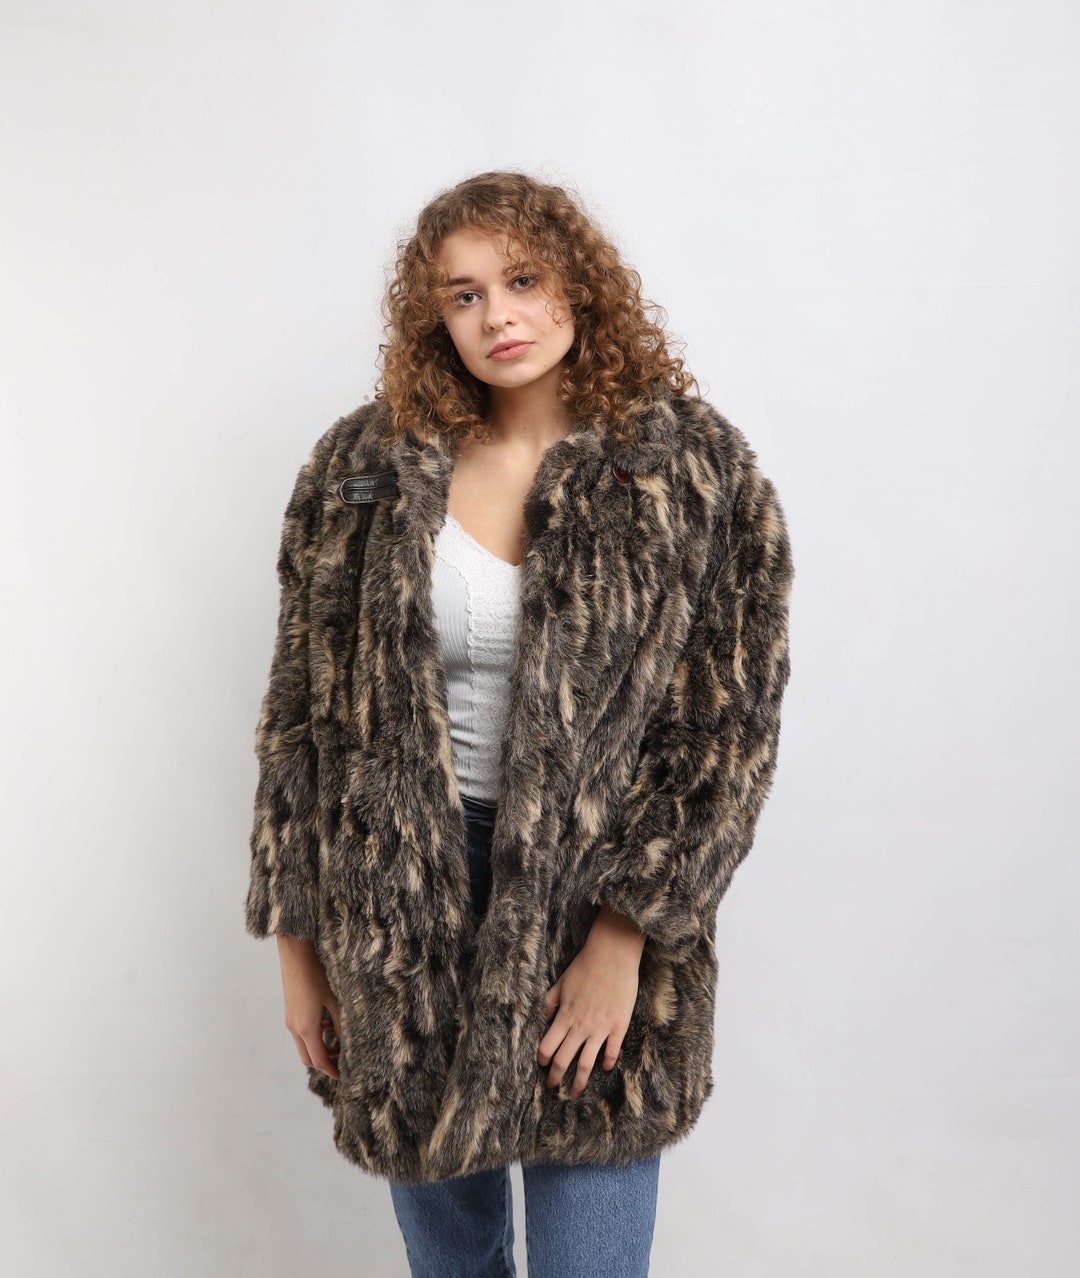 Leopard Print Faux Fur Coat, Animal Print Full Length Fake Fur